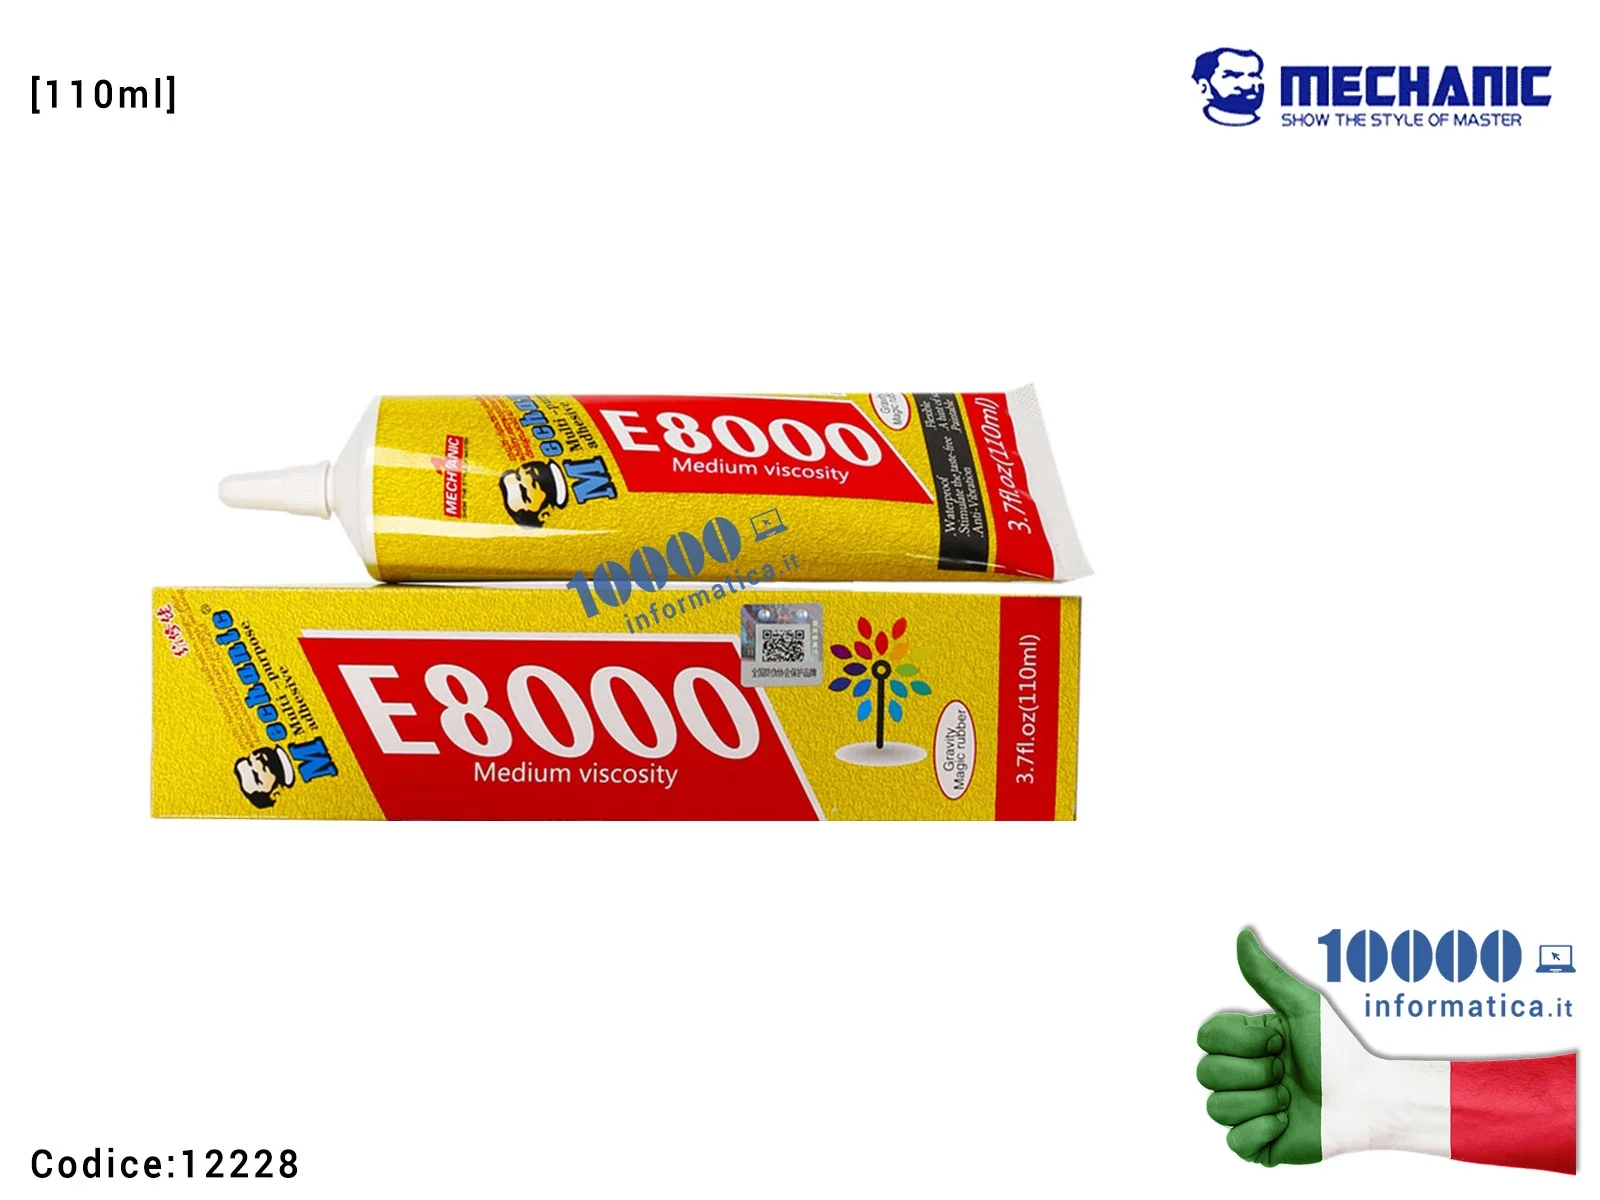 12228 Colla Multiuso MECHANIC E8000 [110ml] Glue Gel Trasparente Ad